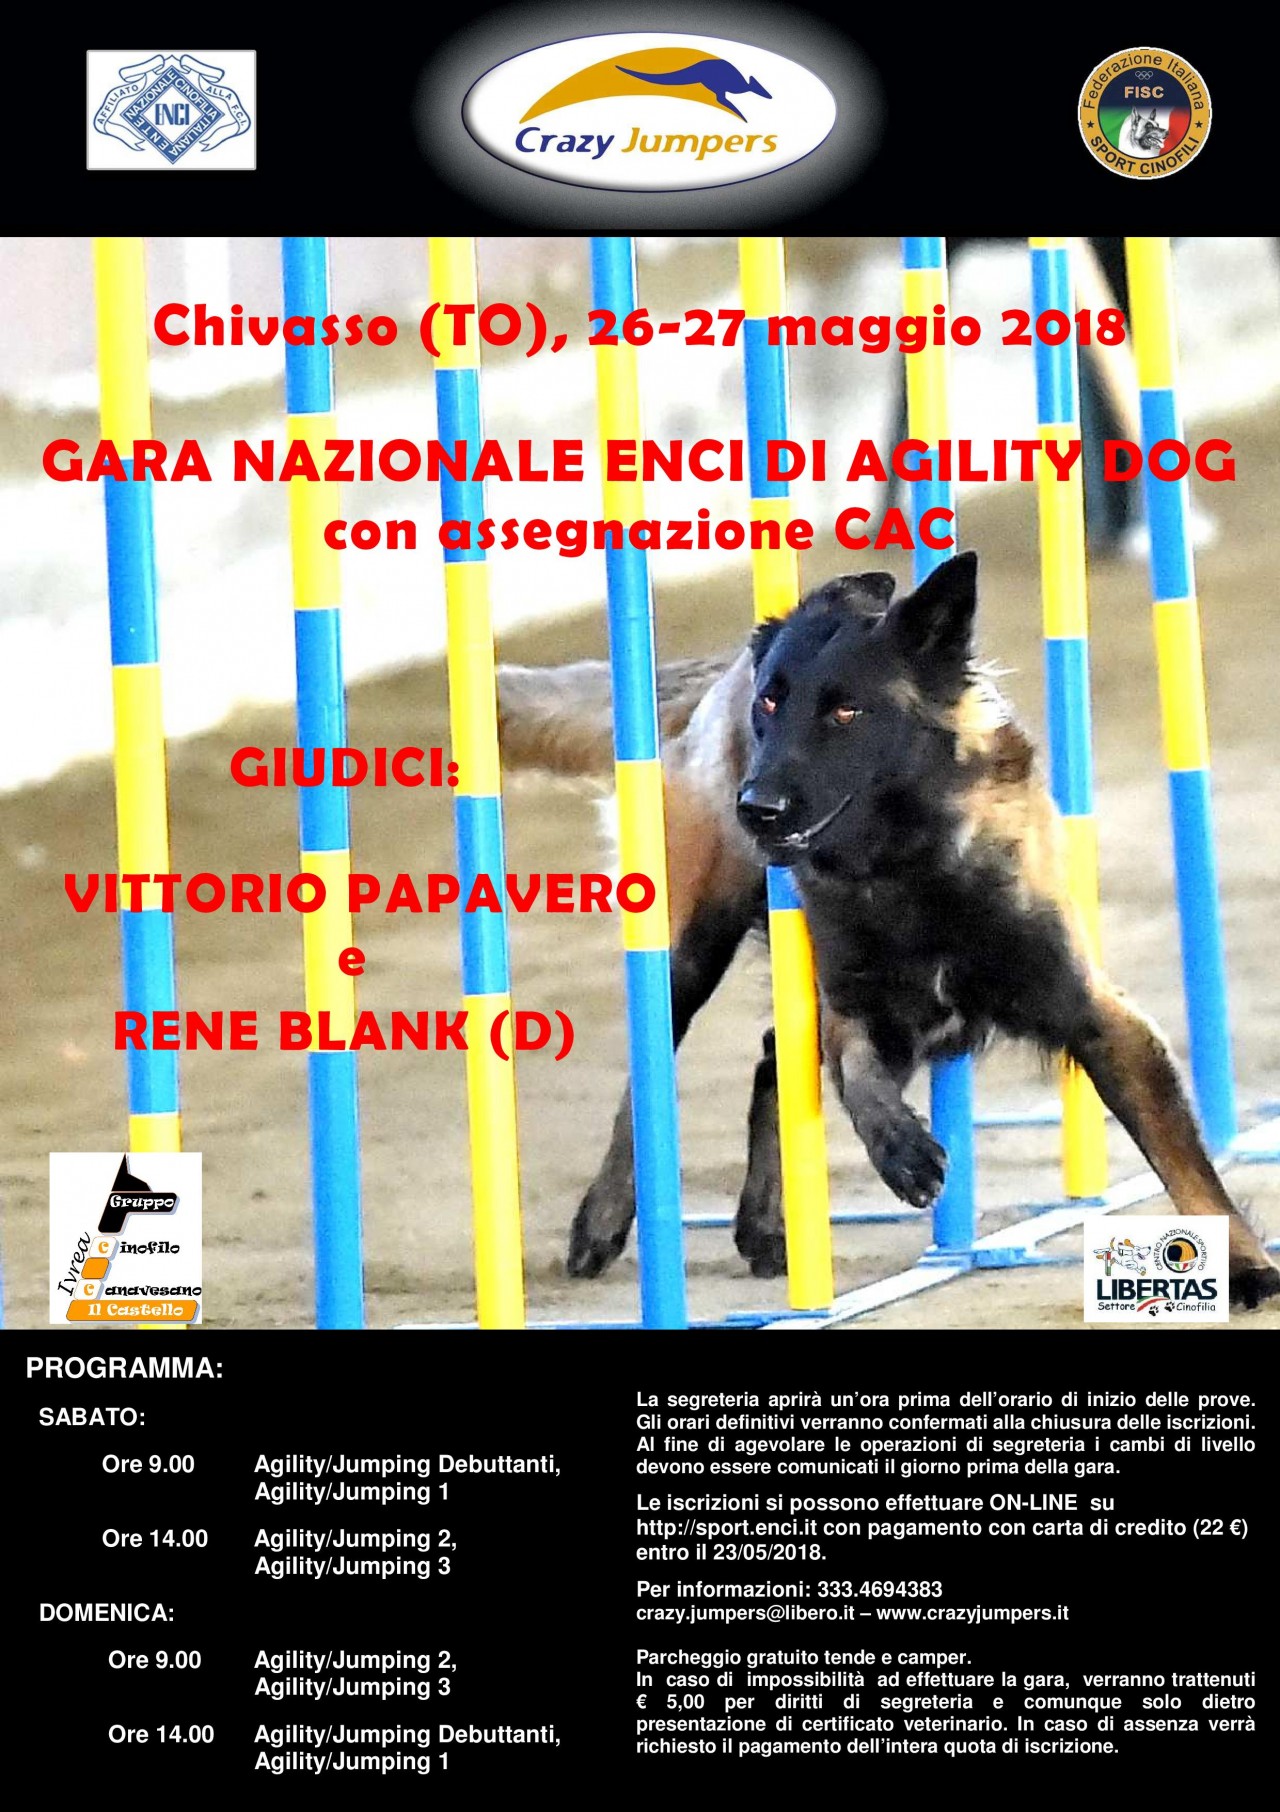 SABATO 26 MAGGIO GARA NAZIONALE DI AGILITY DOG